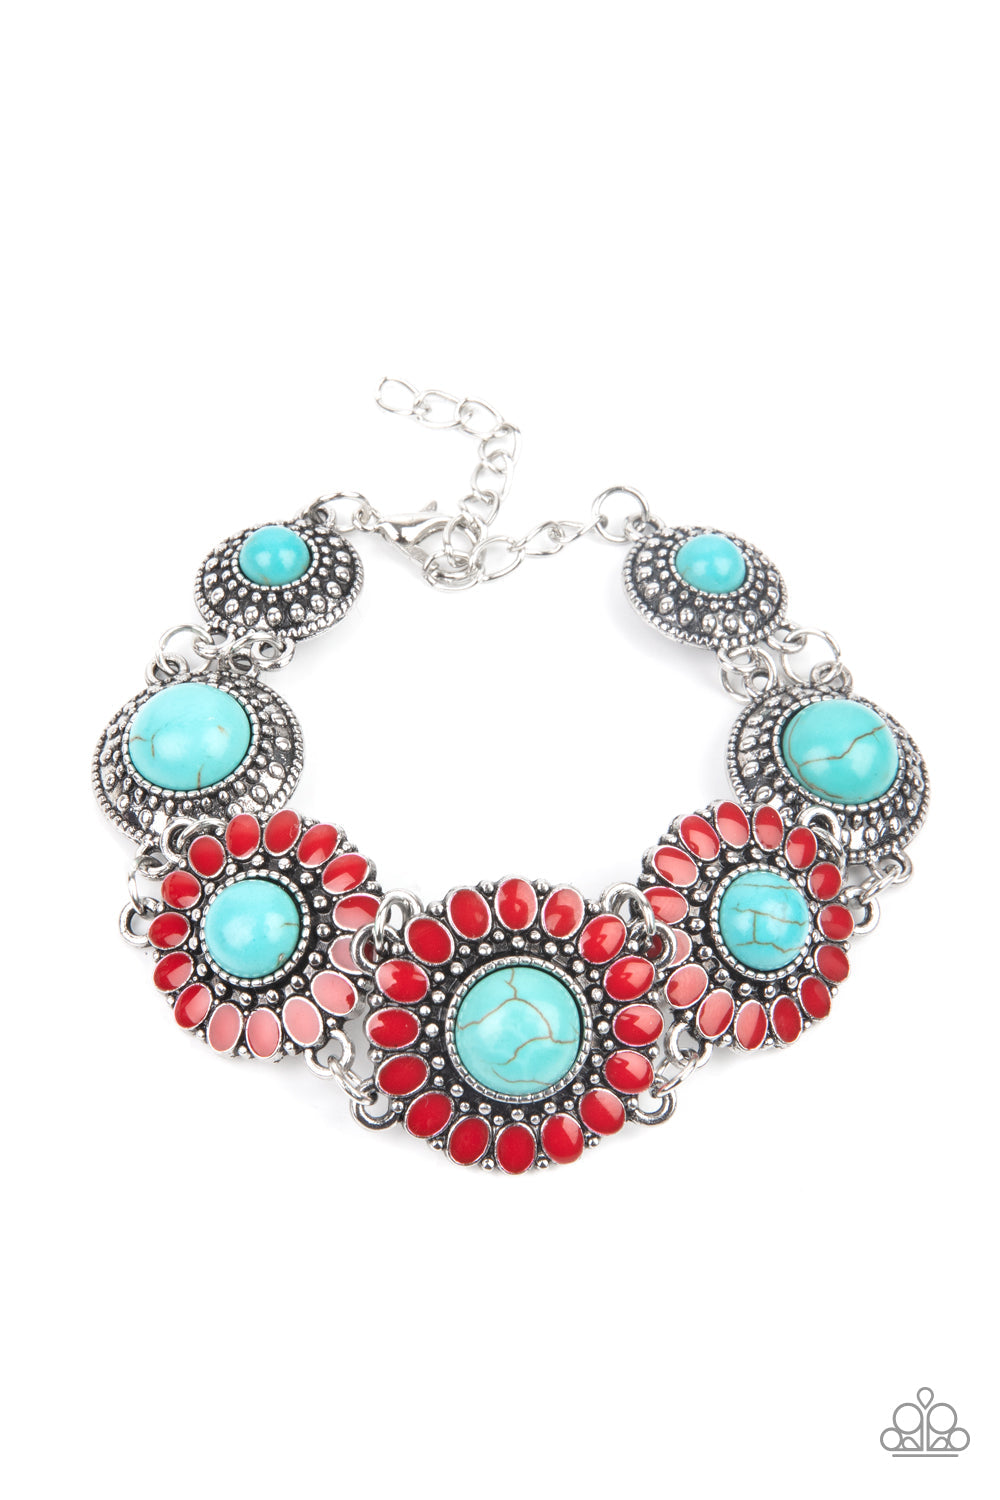 PRE-ORDER - Paparazzi Bodaciously Badlands - Red - Bracelet - $5 Jewelry with Ashley Swint